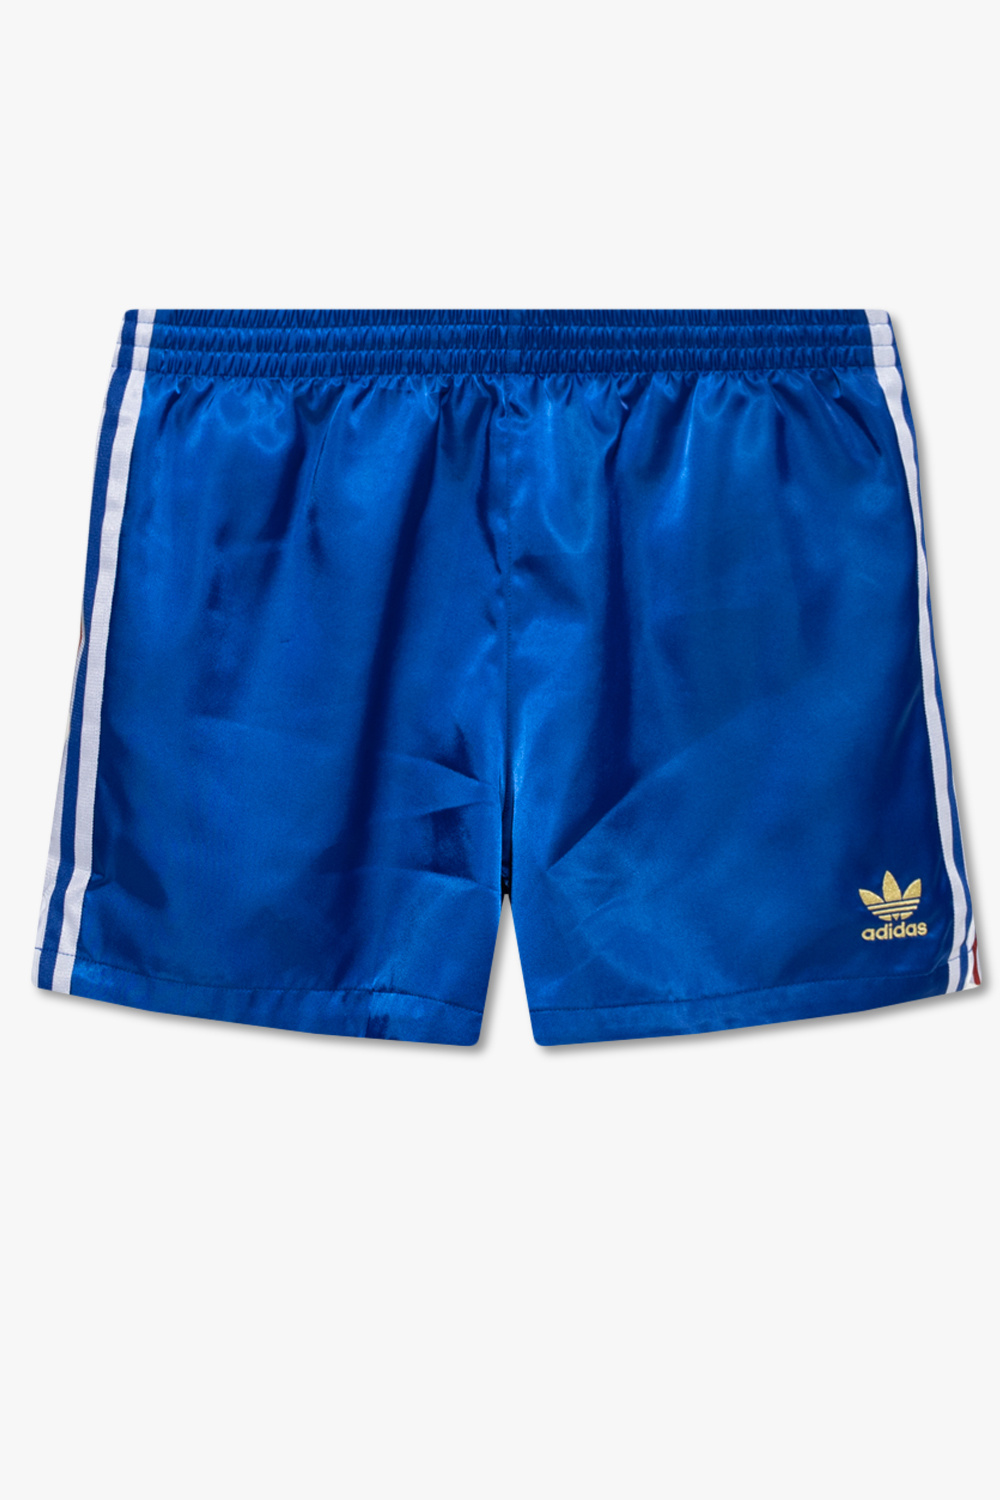 IetpShops Italy - Adidas кроссовки пудровые 31.5 р-р 19.5см оригинальные -  Blue Shorts with logo ADIDAS Originals